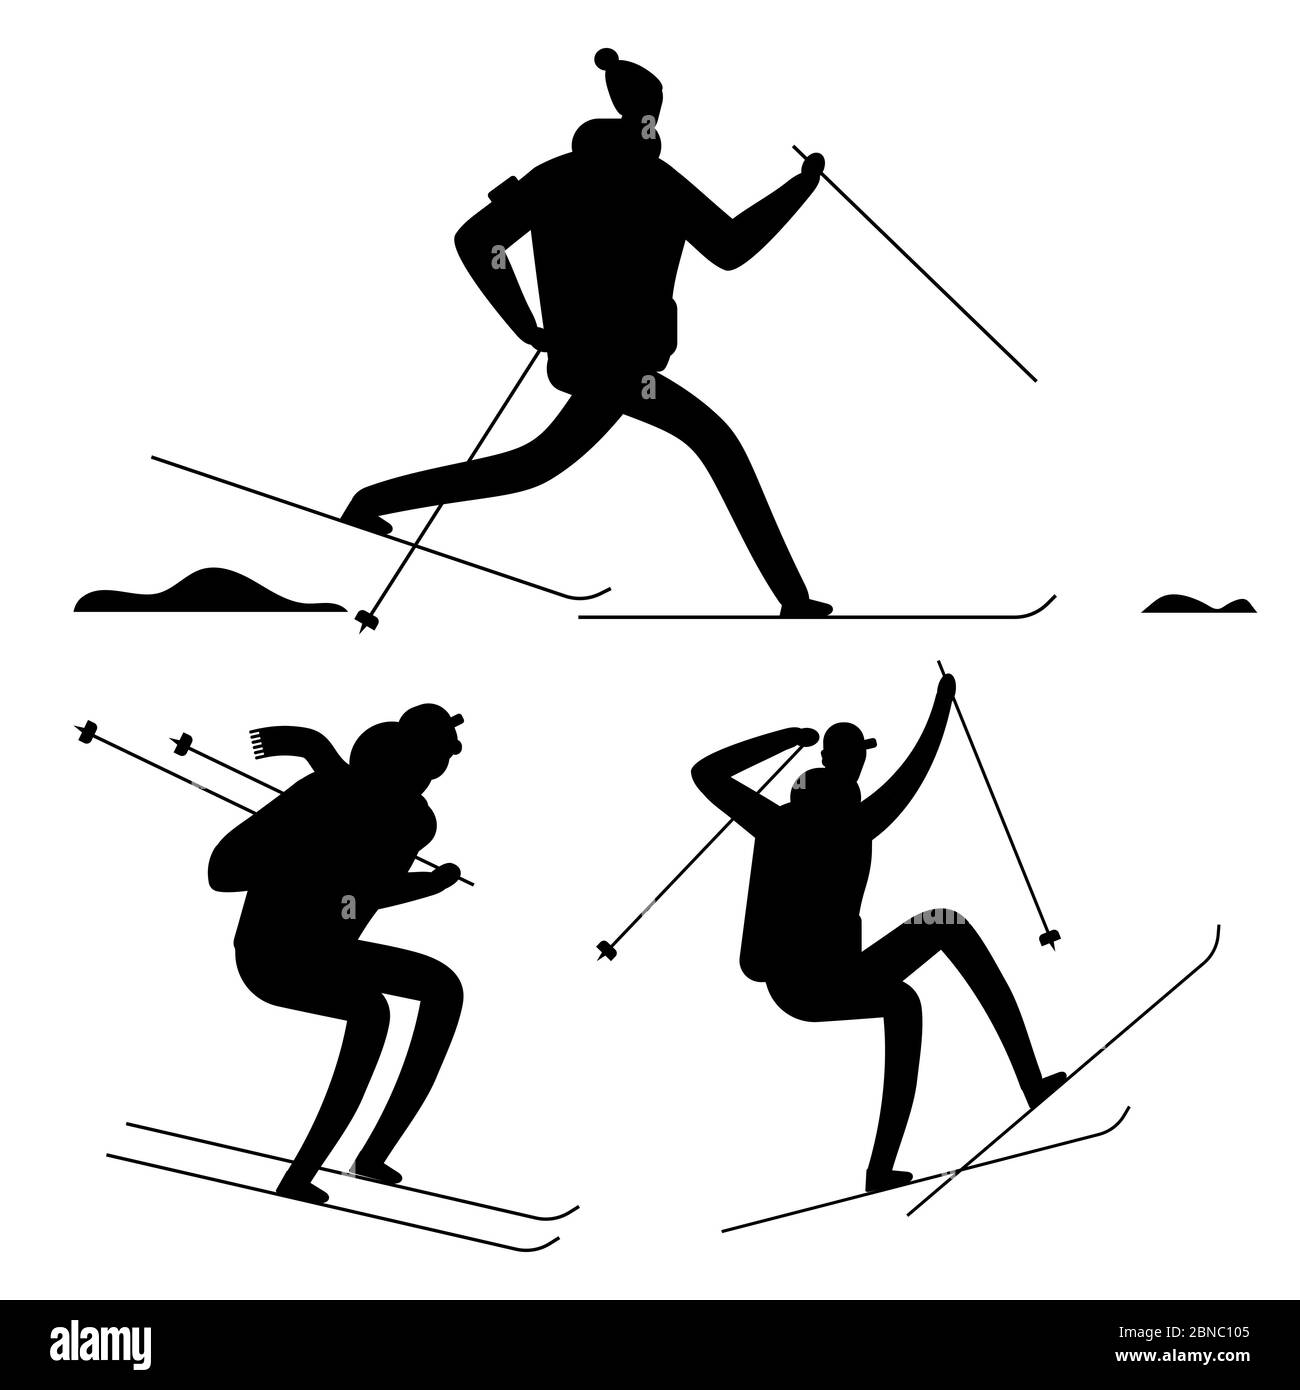 Les skieurs ont des silhouettes noires isolées sur fond blanc. Vector ski silhouette sportifs, illustration de l'athlète de course et de saut à ski Illustration de Vecteur